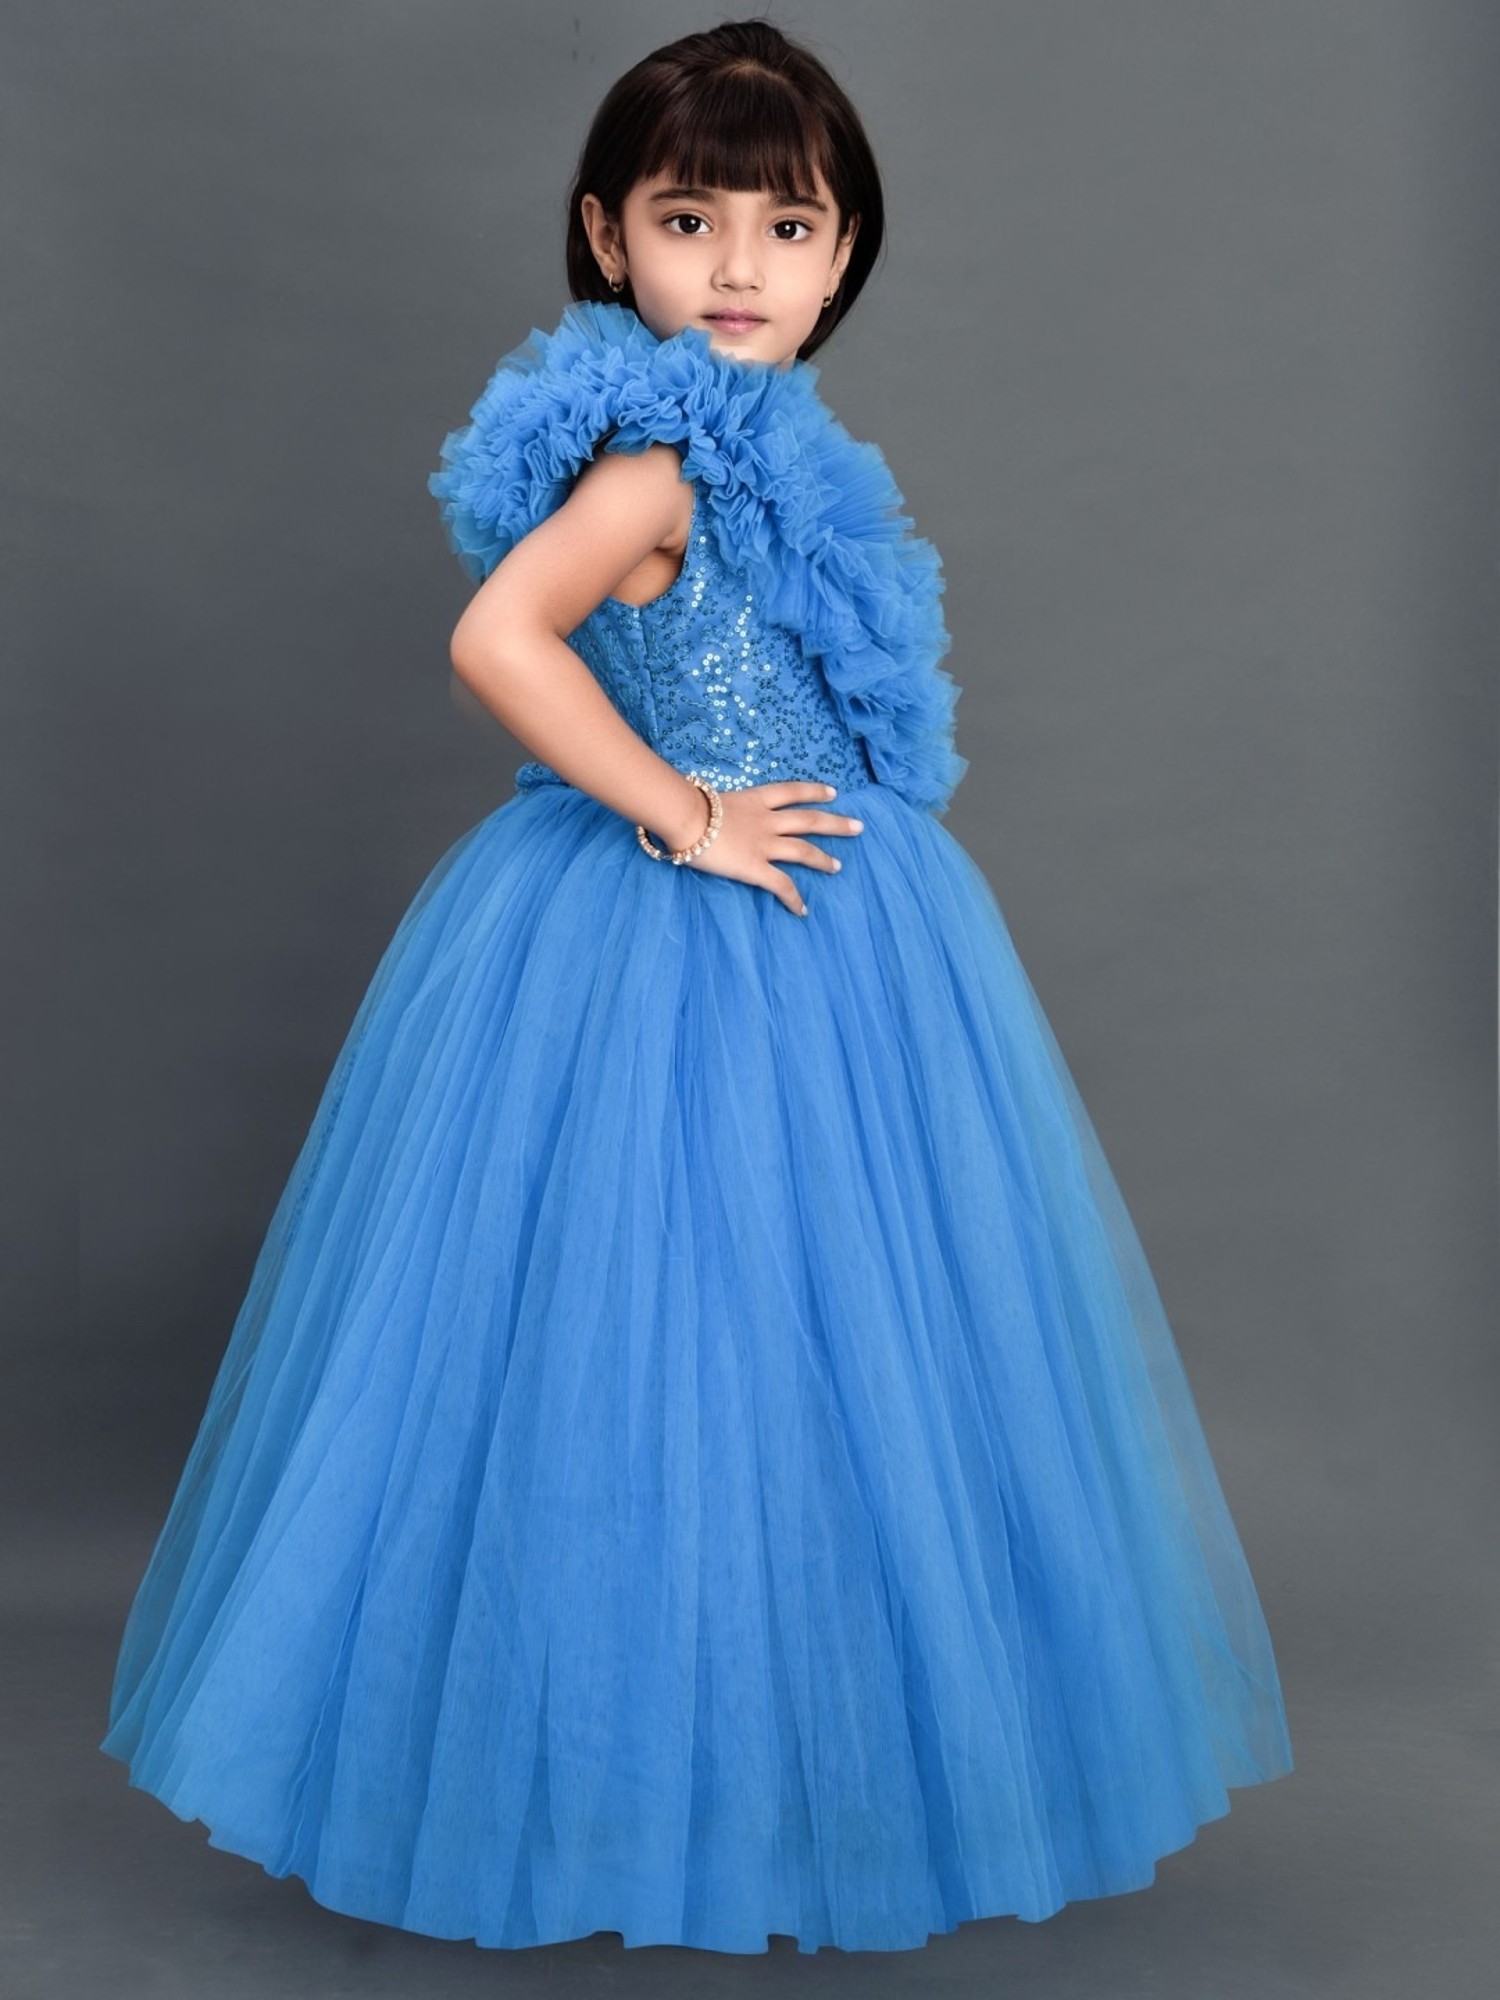 FAST SHIPPING Elegant Blue Flower Girl Dress, Flower Girl Dress, Toddler Girl  Dress, Formal Dress, Special Occasion Dress, Christmas Dress - Etsy